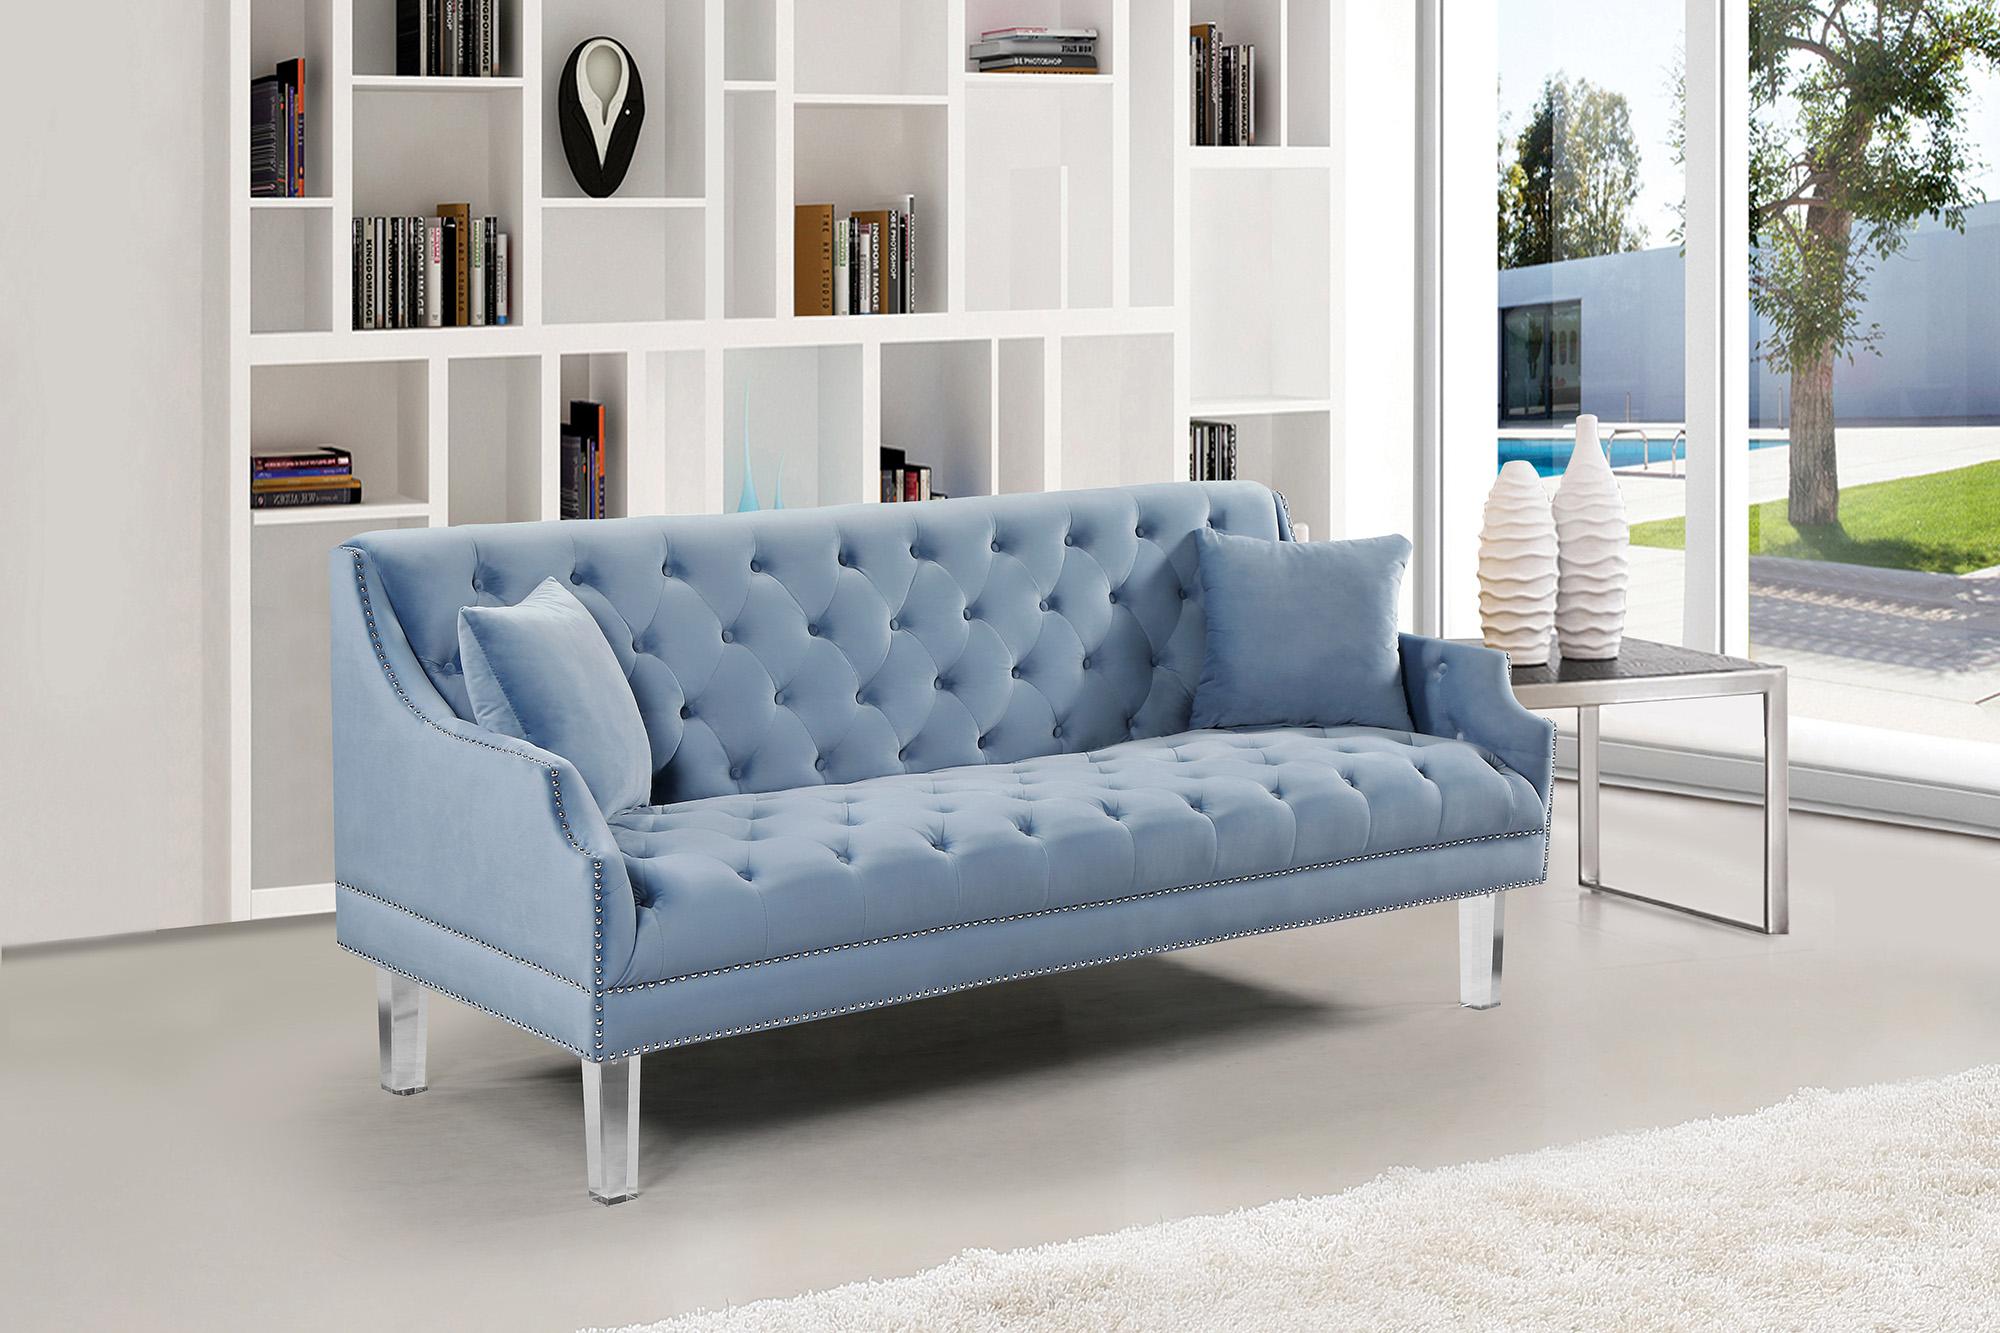 

    
635SkyBlu-Set-2 Sky Blue Velvet Button Tufting Sofa Set 2P Roxy 635SkyBlu Meridian Contemporary
